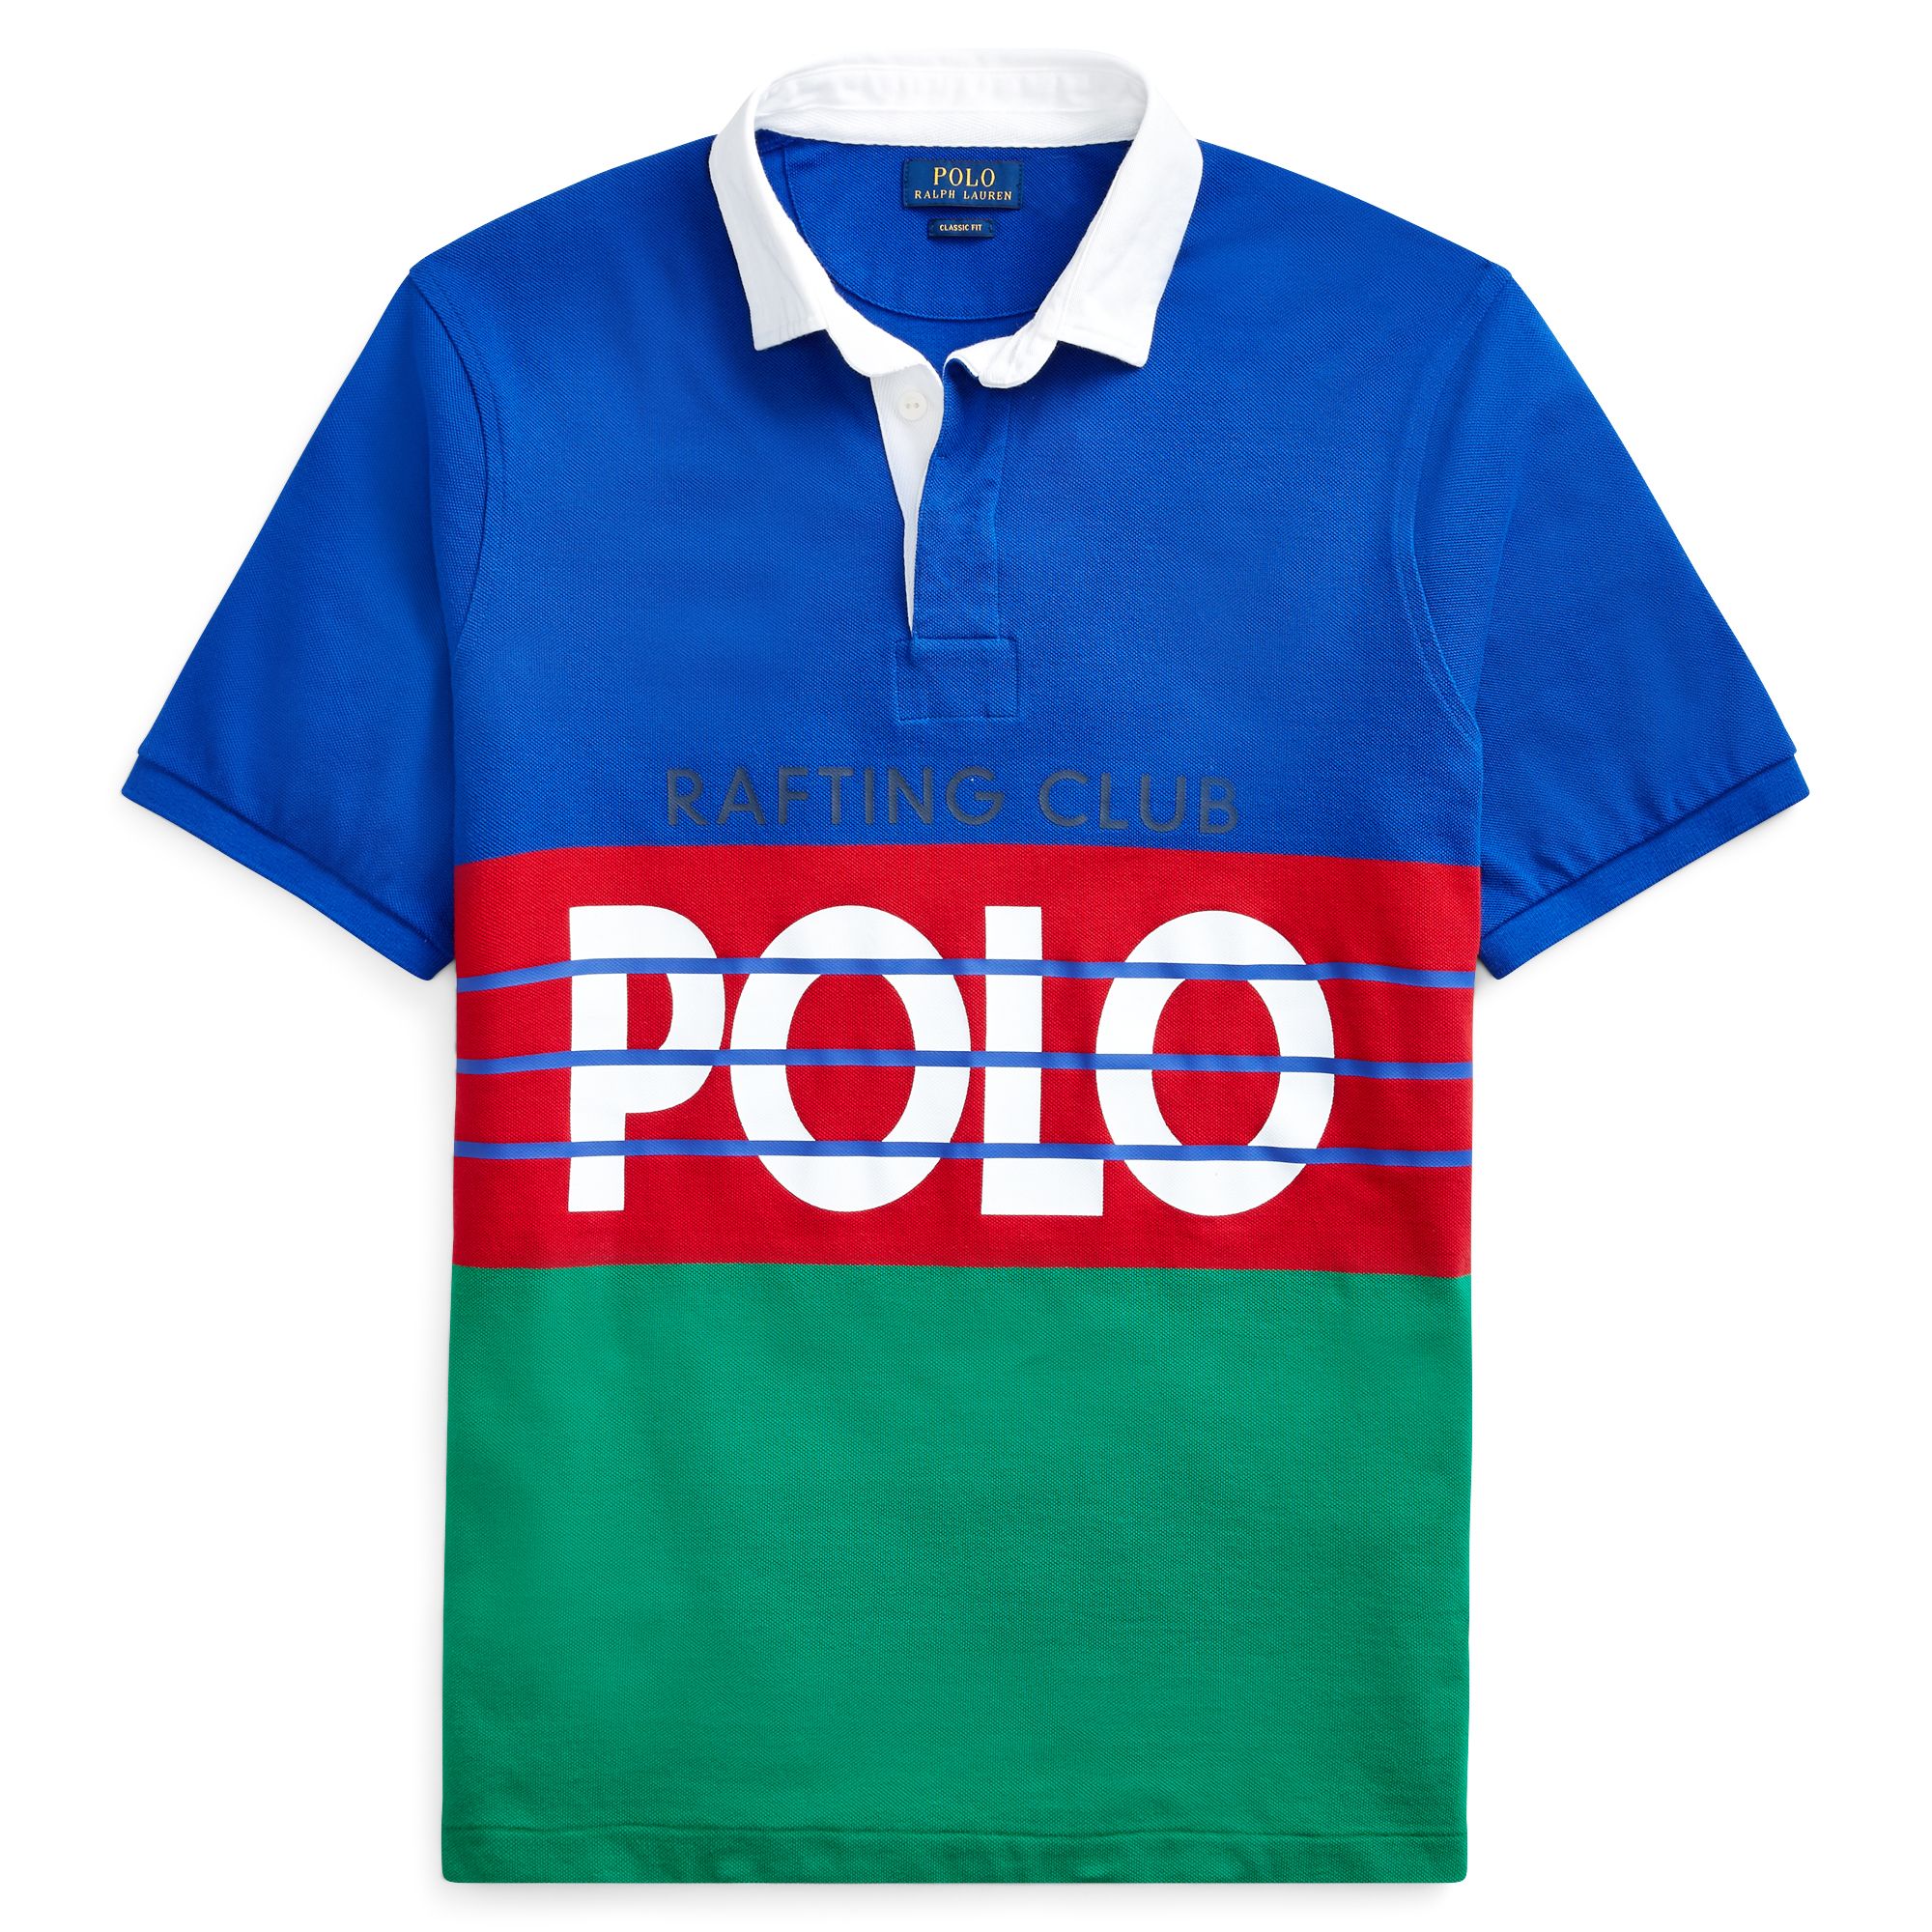 polo rafting club jacket